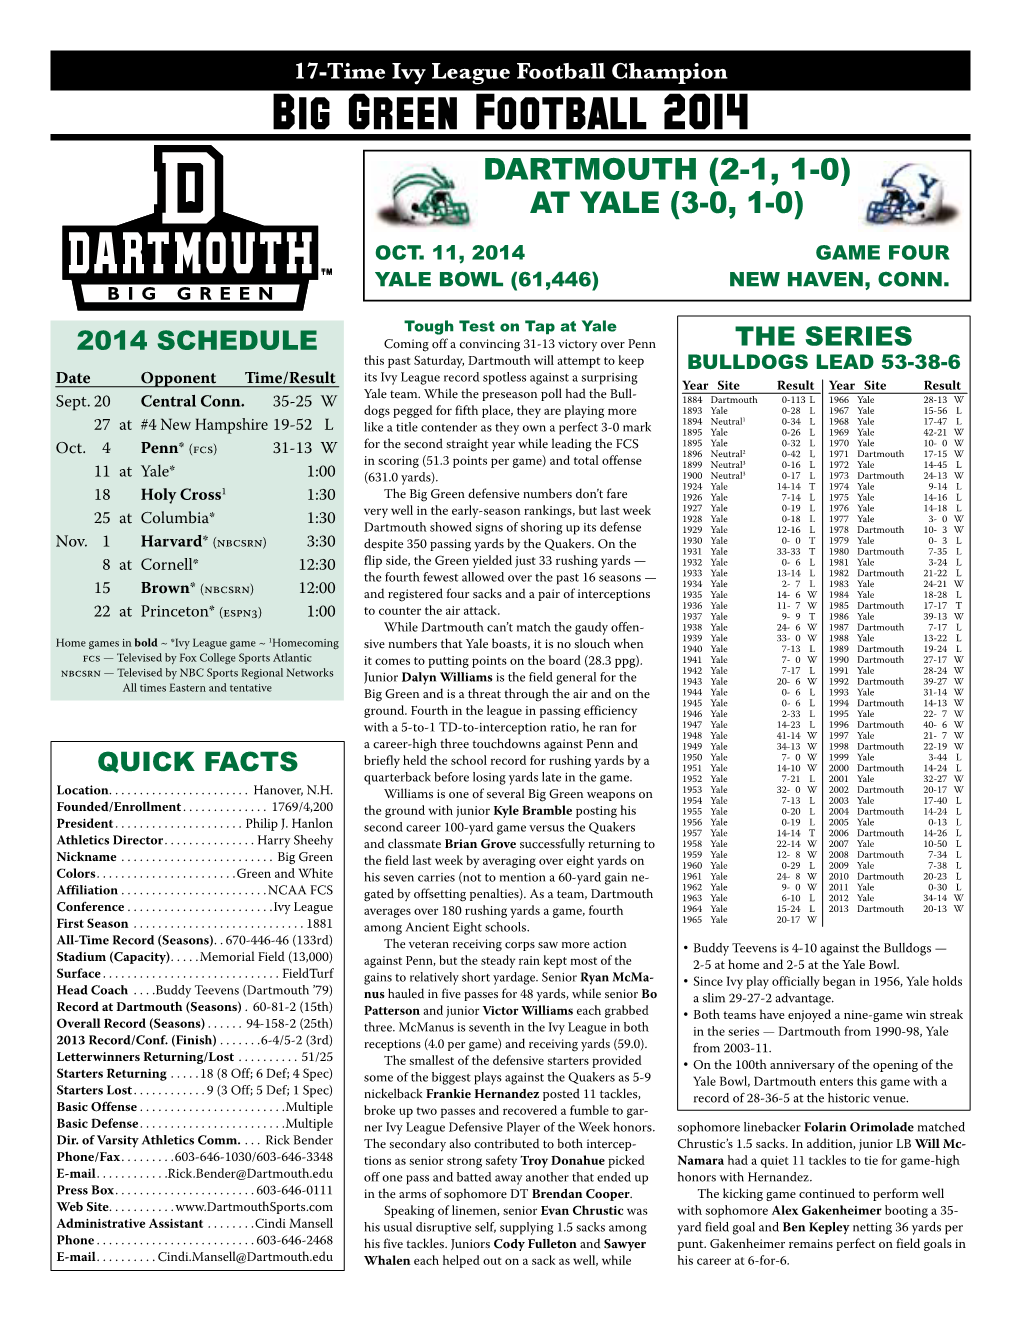 Big Green Football 2014 Dartmouth (2-1, 1-0) at Yale (3-0, 1-0)